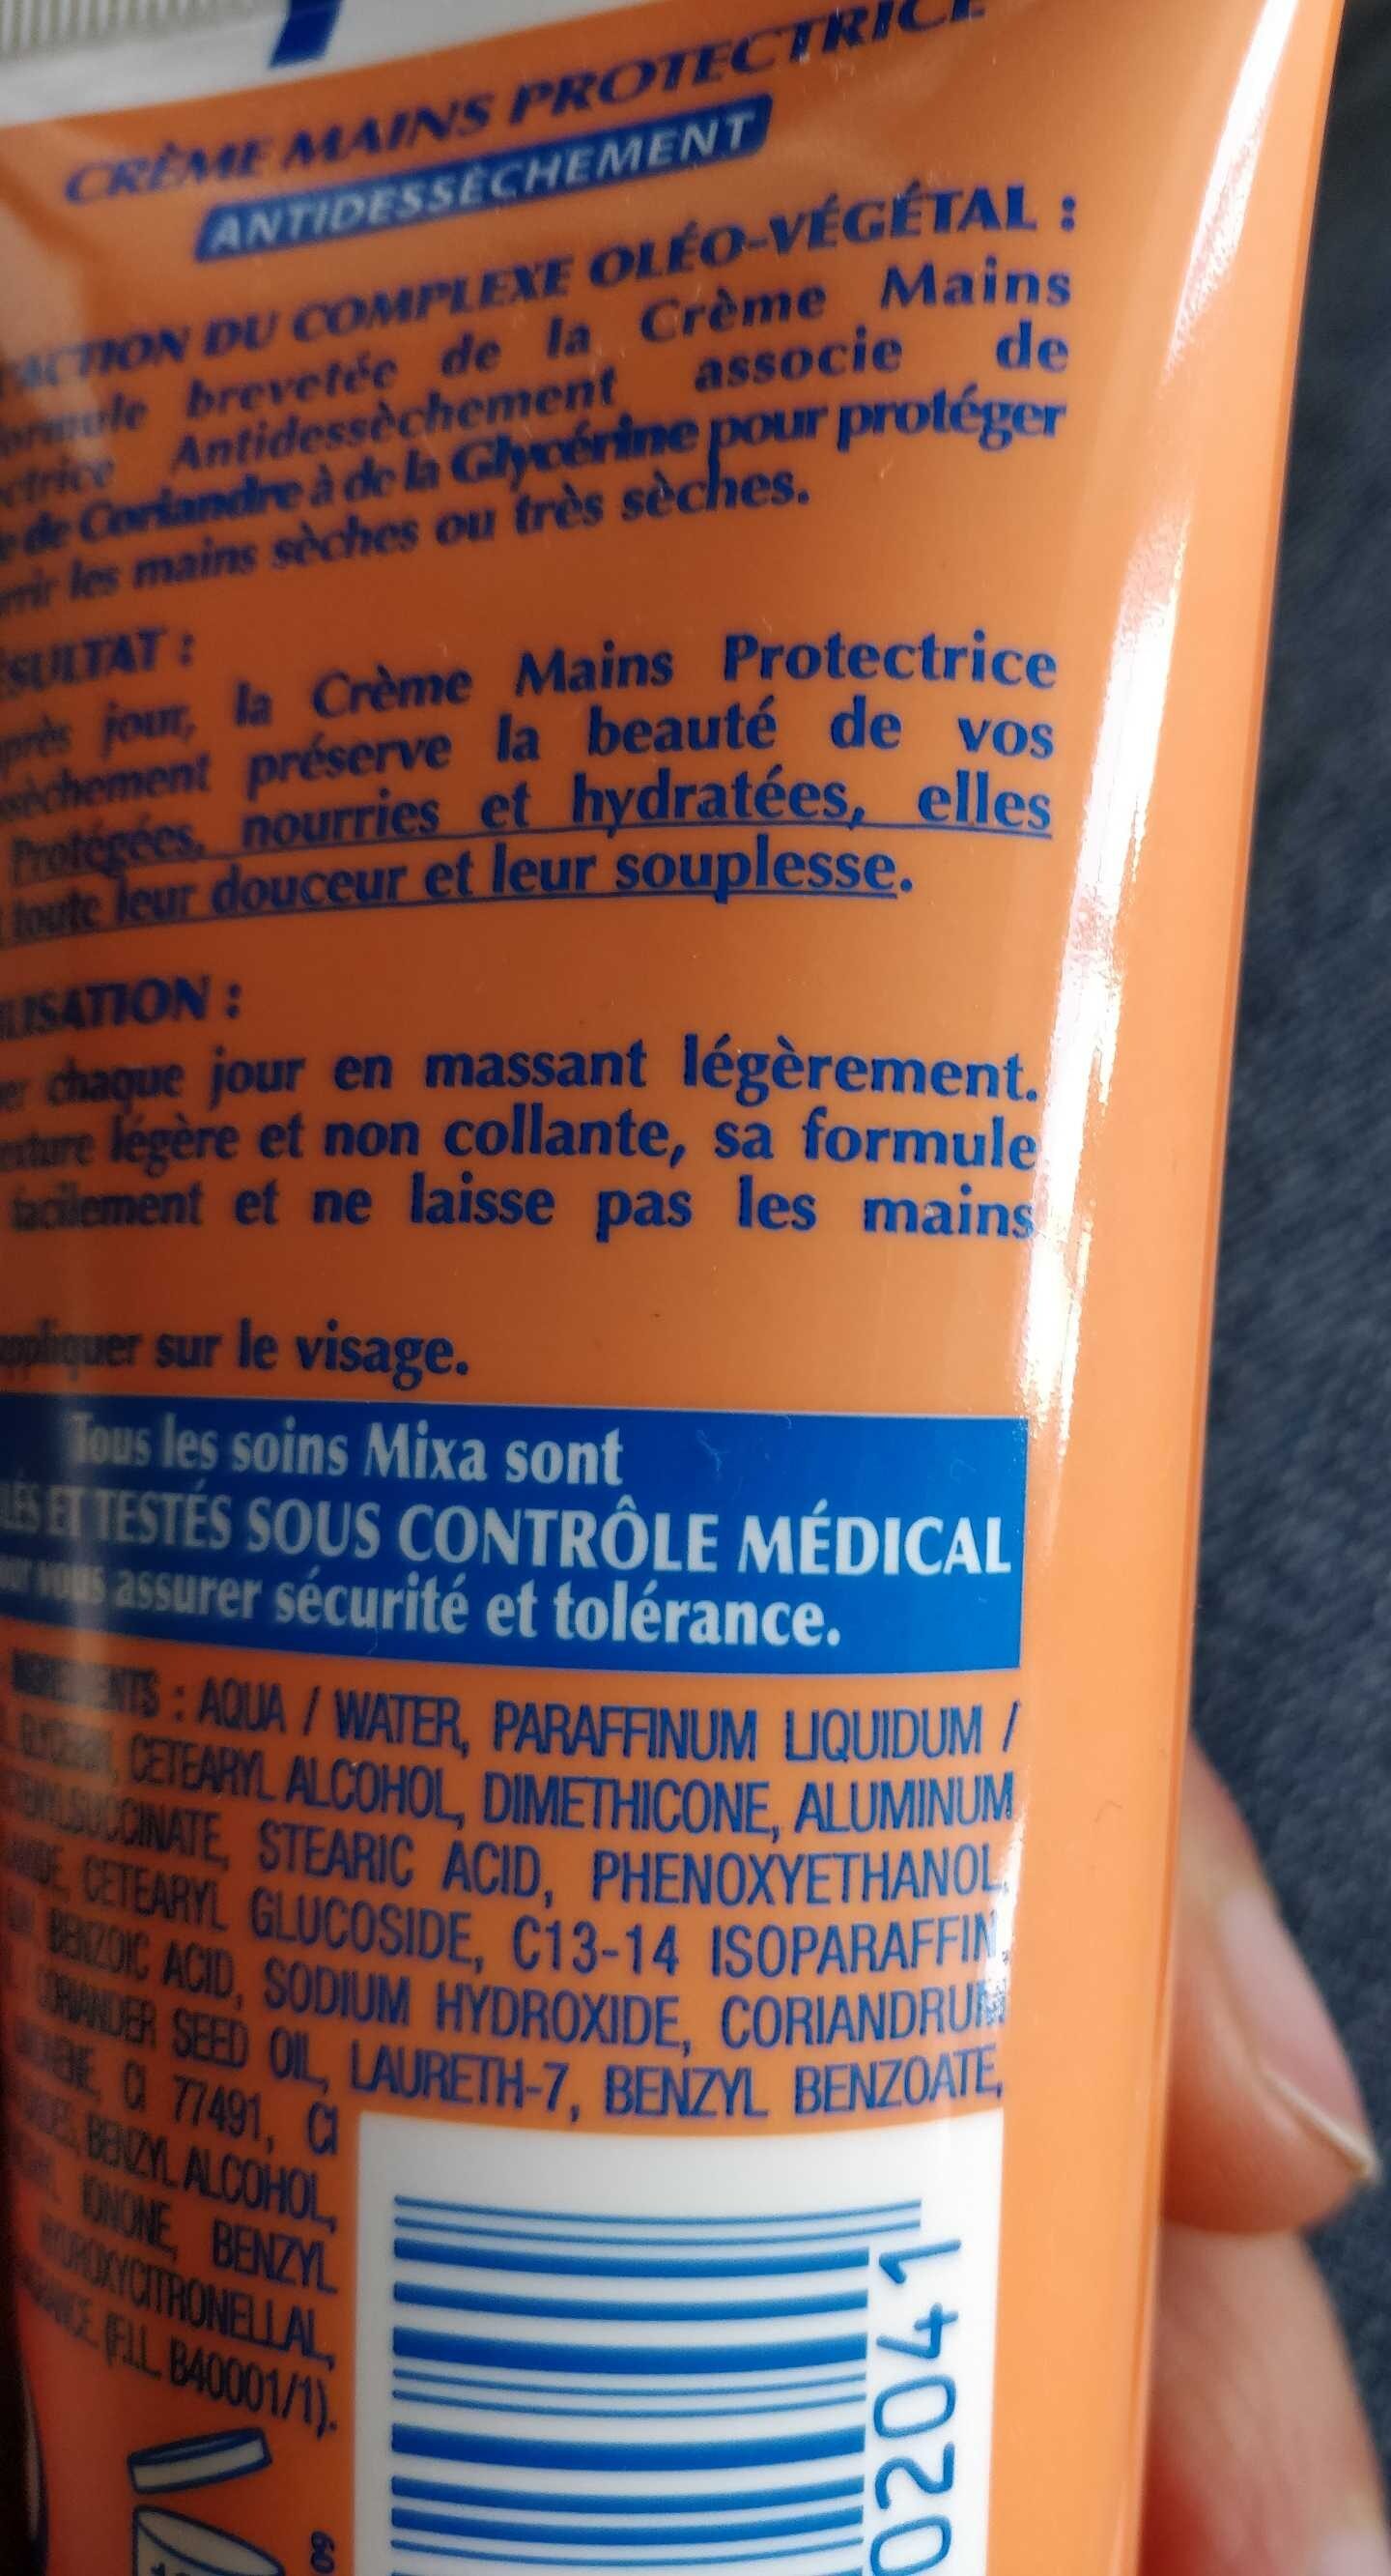 Crème mains protectrice antidéssèchement - Produit - fr